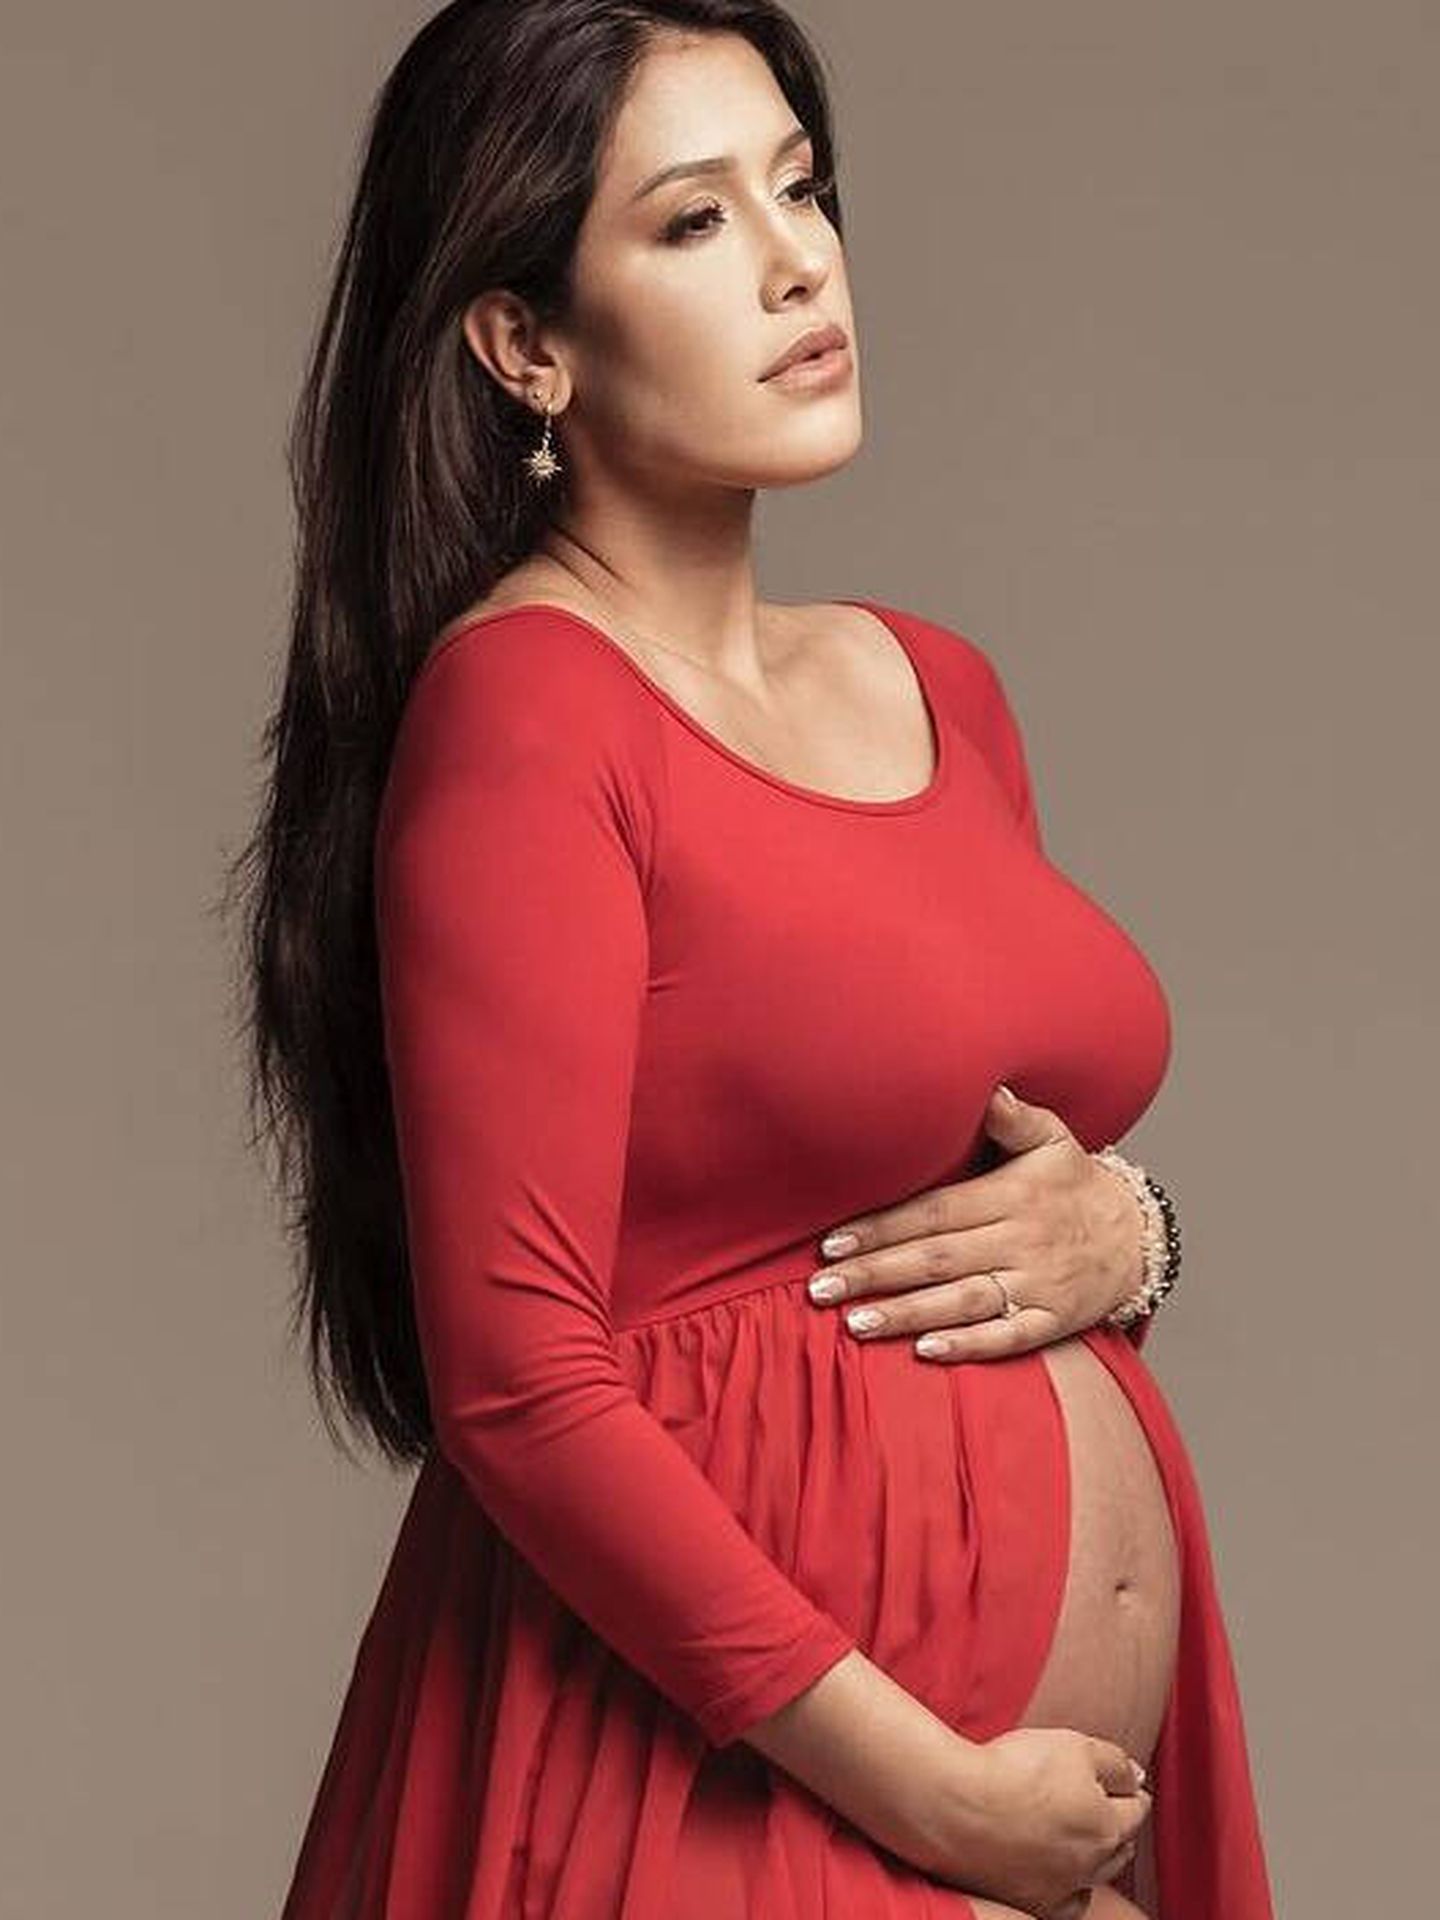 Foto de archivo de Gabriela durante el embarazo. (Instagram)